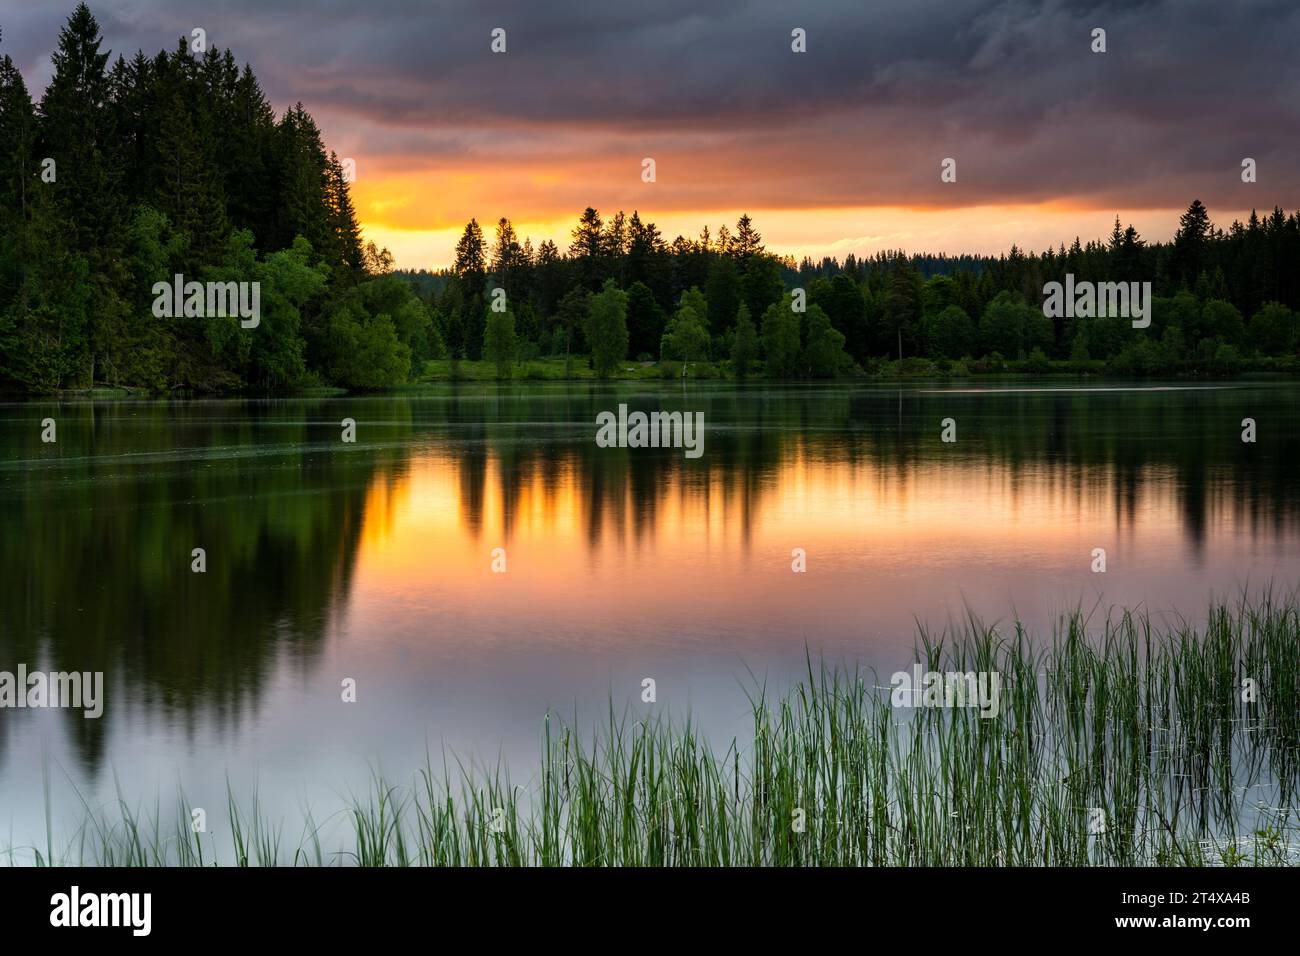 Paysage dans la Forêt Noire. Beau lac Windgfällweiher, entouré de forêt. Le ciel du coucher du soleil se reflète dans l'eau. Allemagne. Banque D'Images